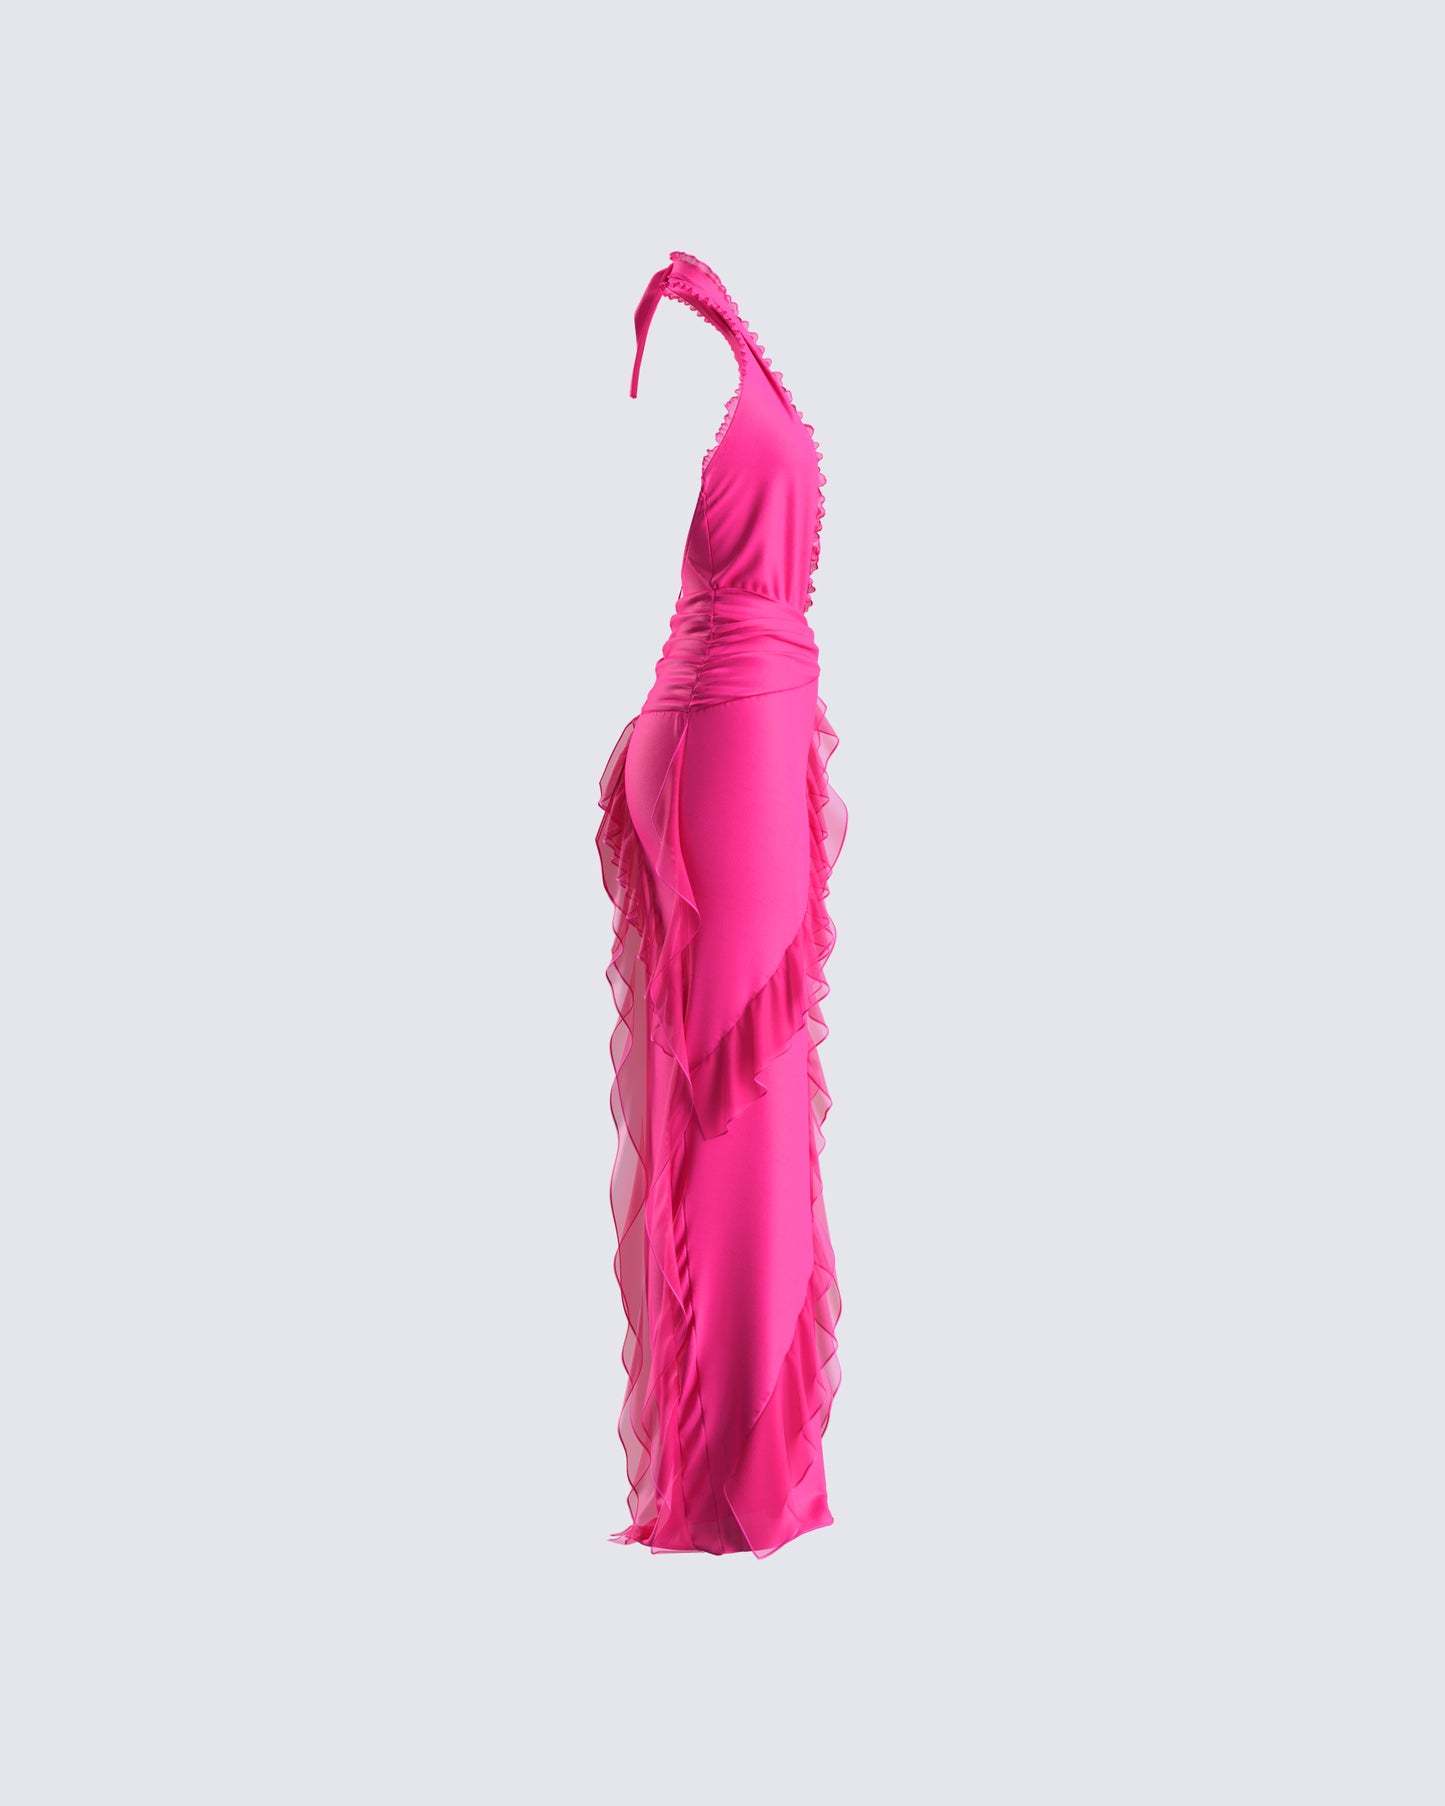 Nandi Hot Pink Ruffle Maxi Dress